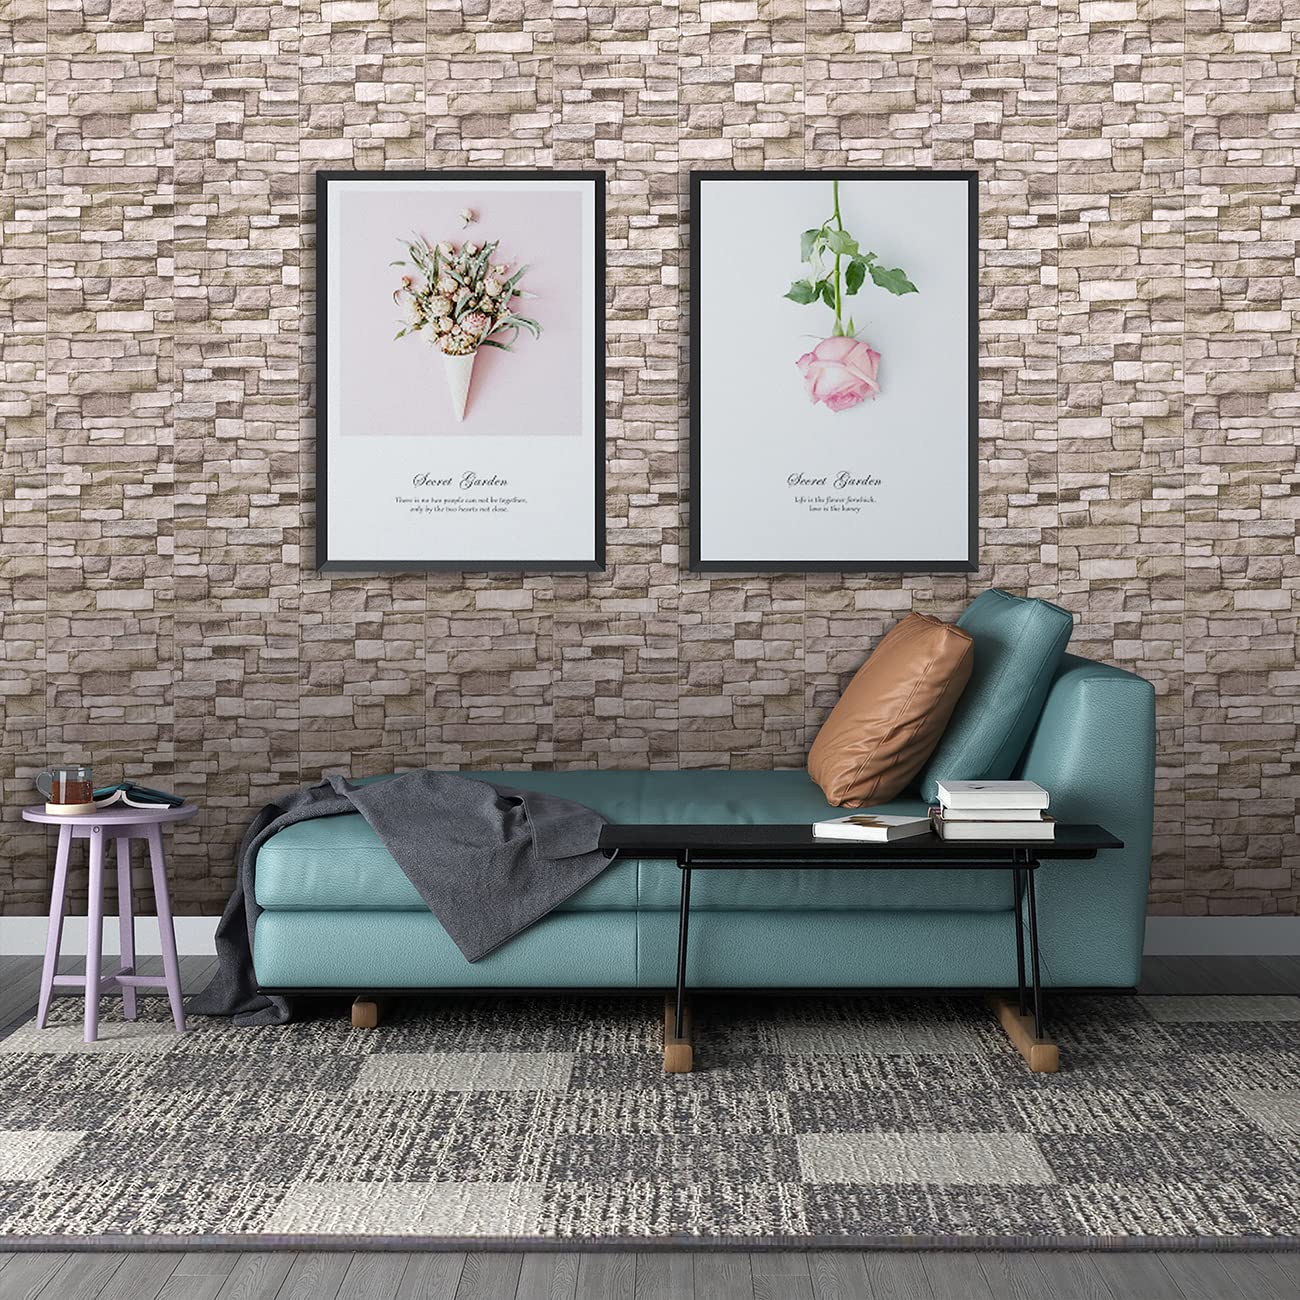 A06005-Art3d 30 Pcs 3D Brick Wallpaper foax foam brick wall in  white(43.5Sq.Ft)